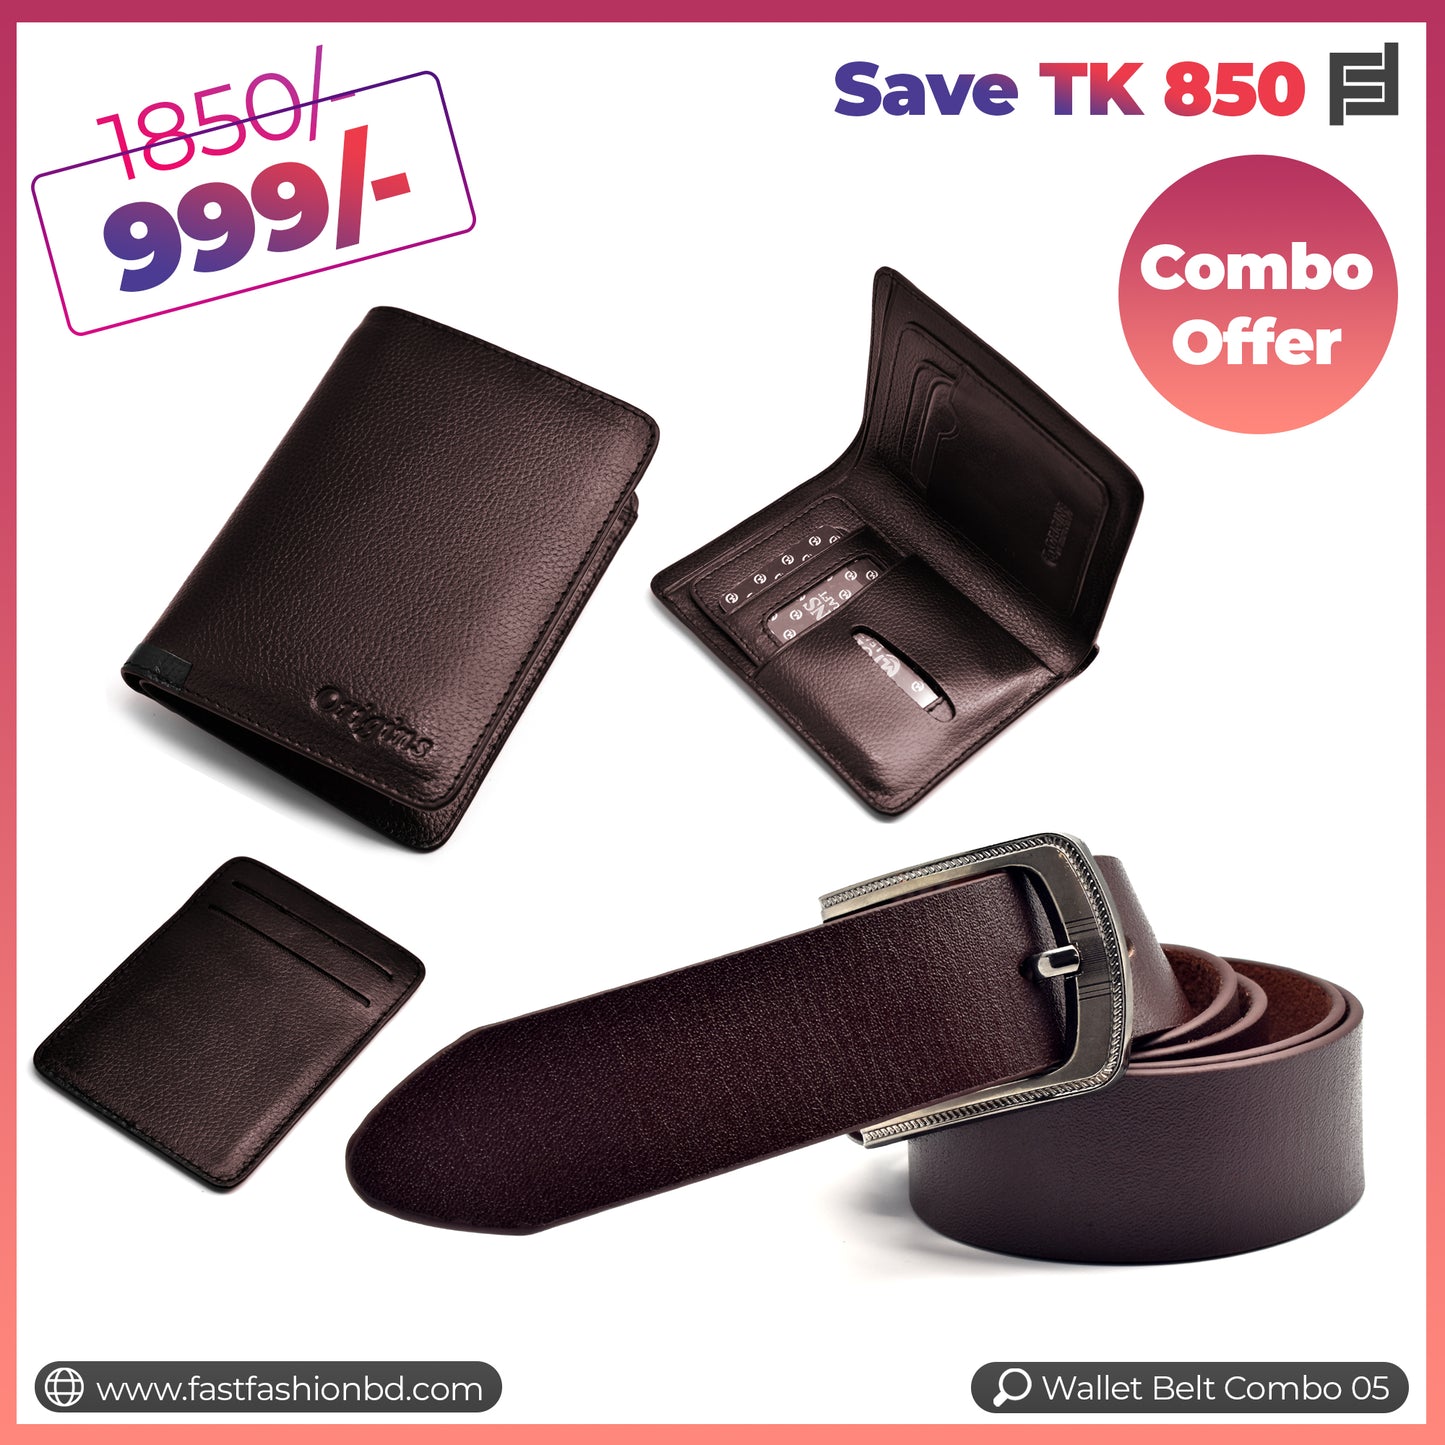 Wallet Belt Combo Offer Save TK 850 - Wallet Belt Combo 05